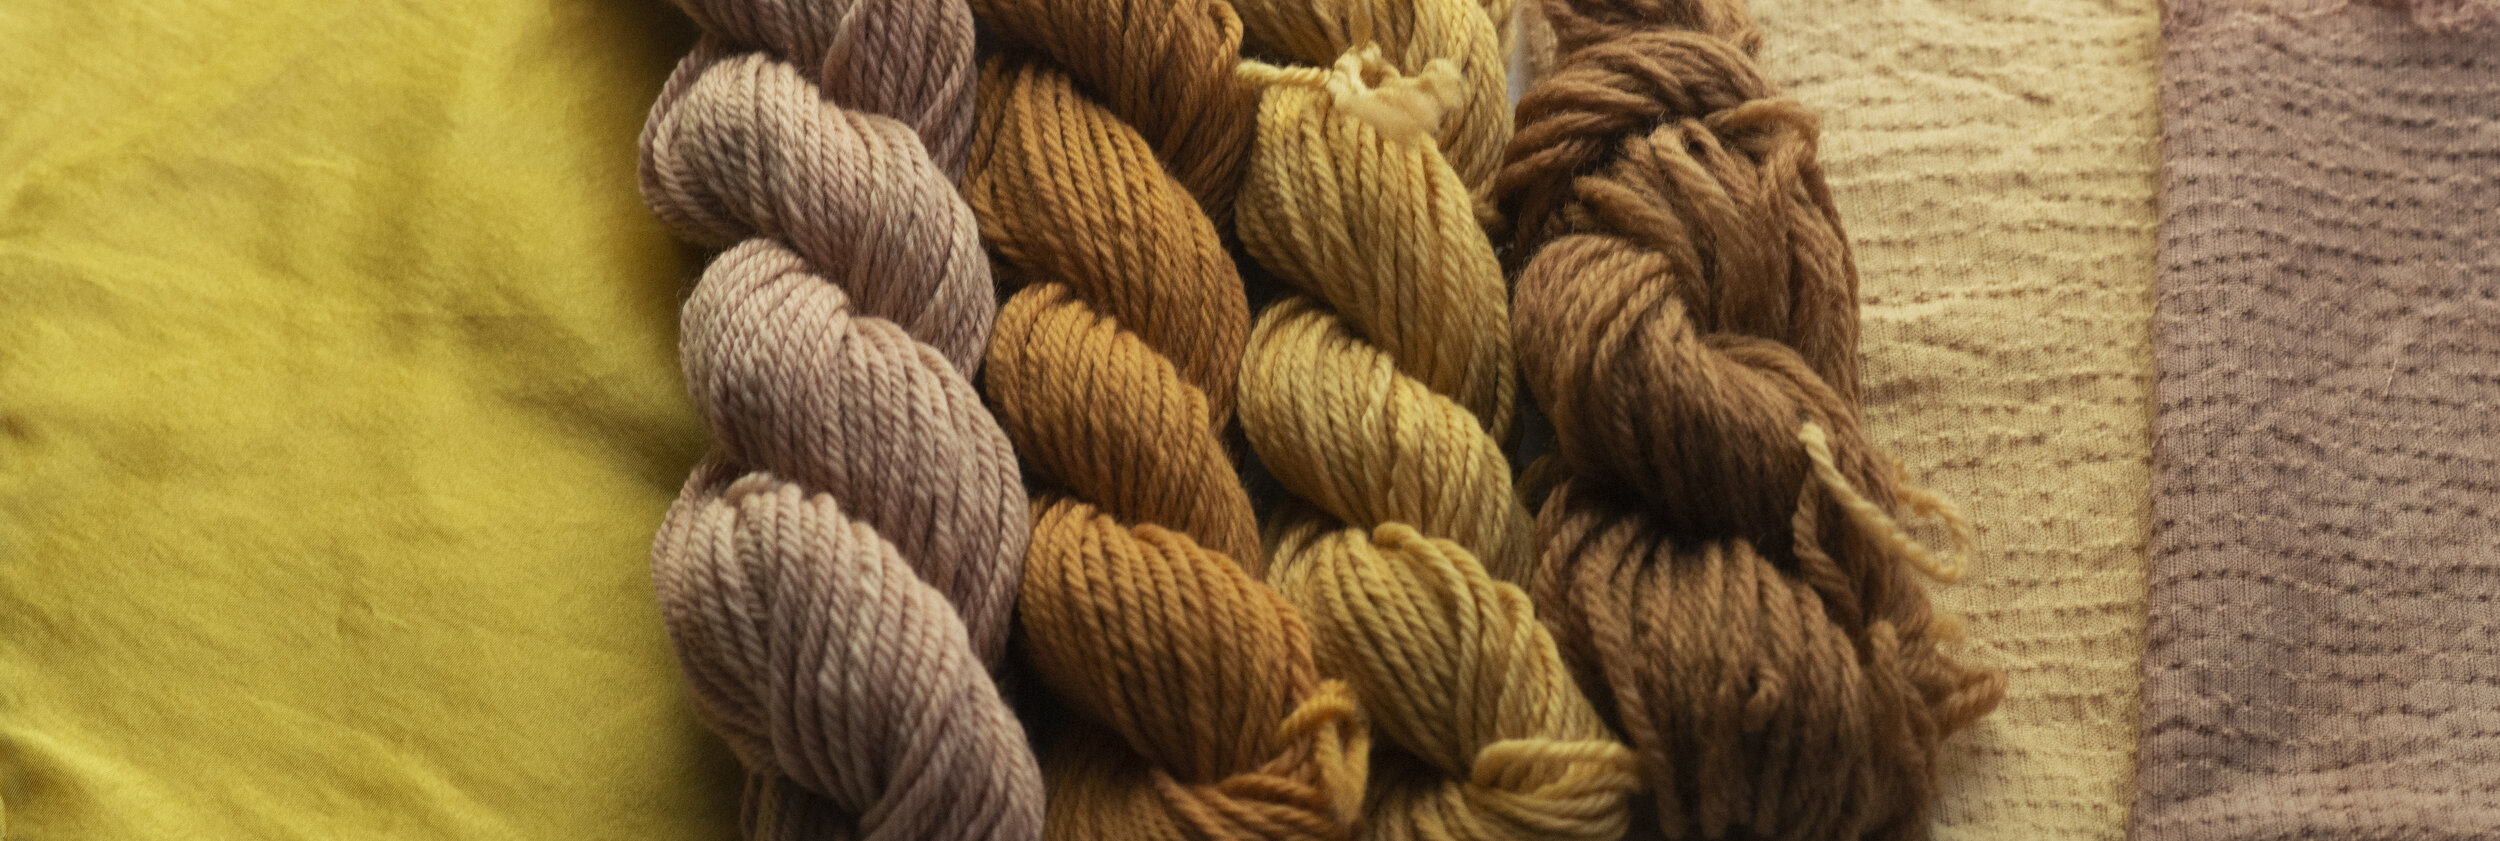 Dyeing With Himalayan Rhubarb Extract — Shepherd Textiles